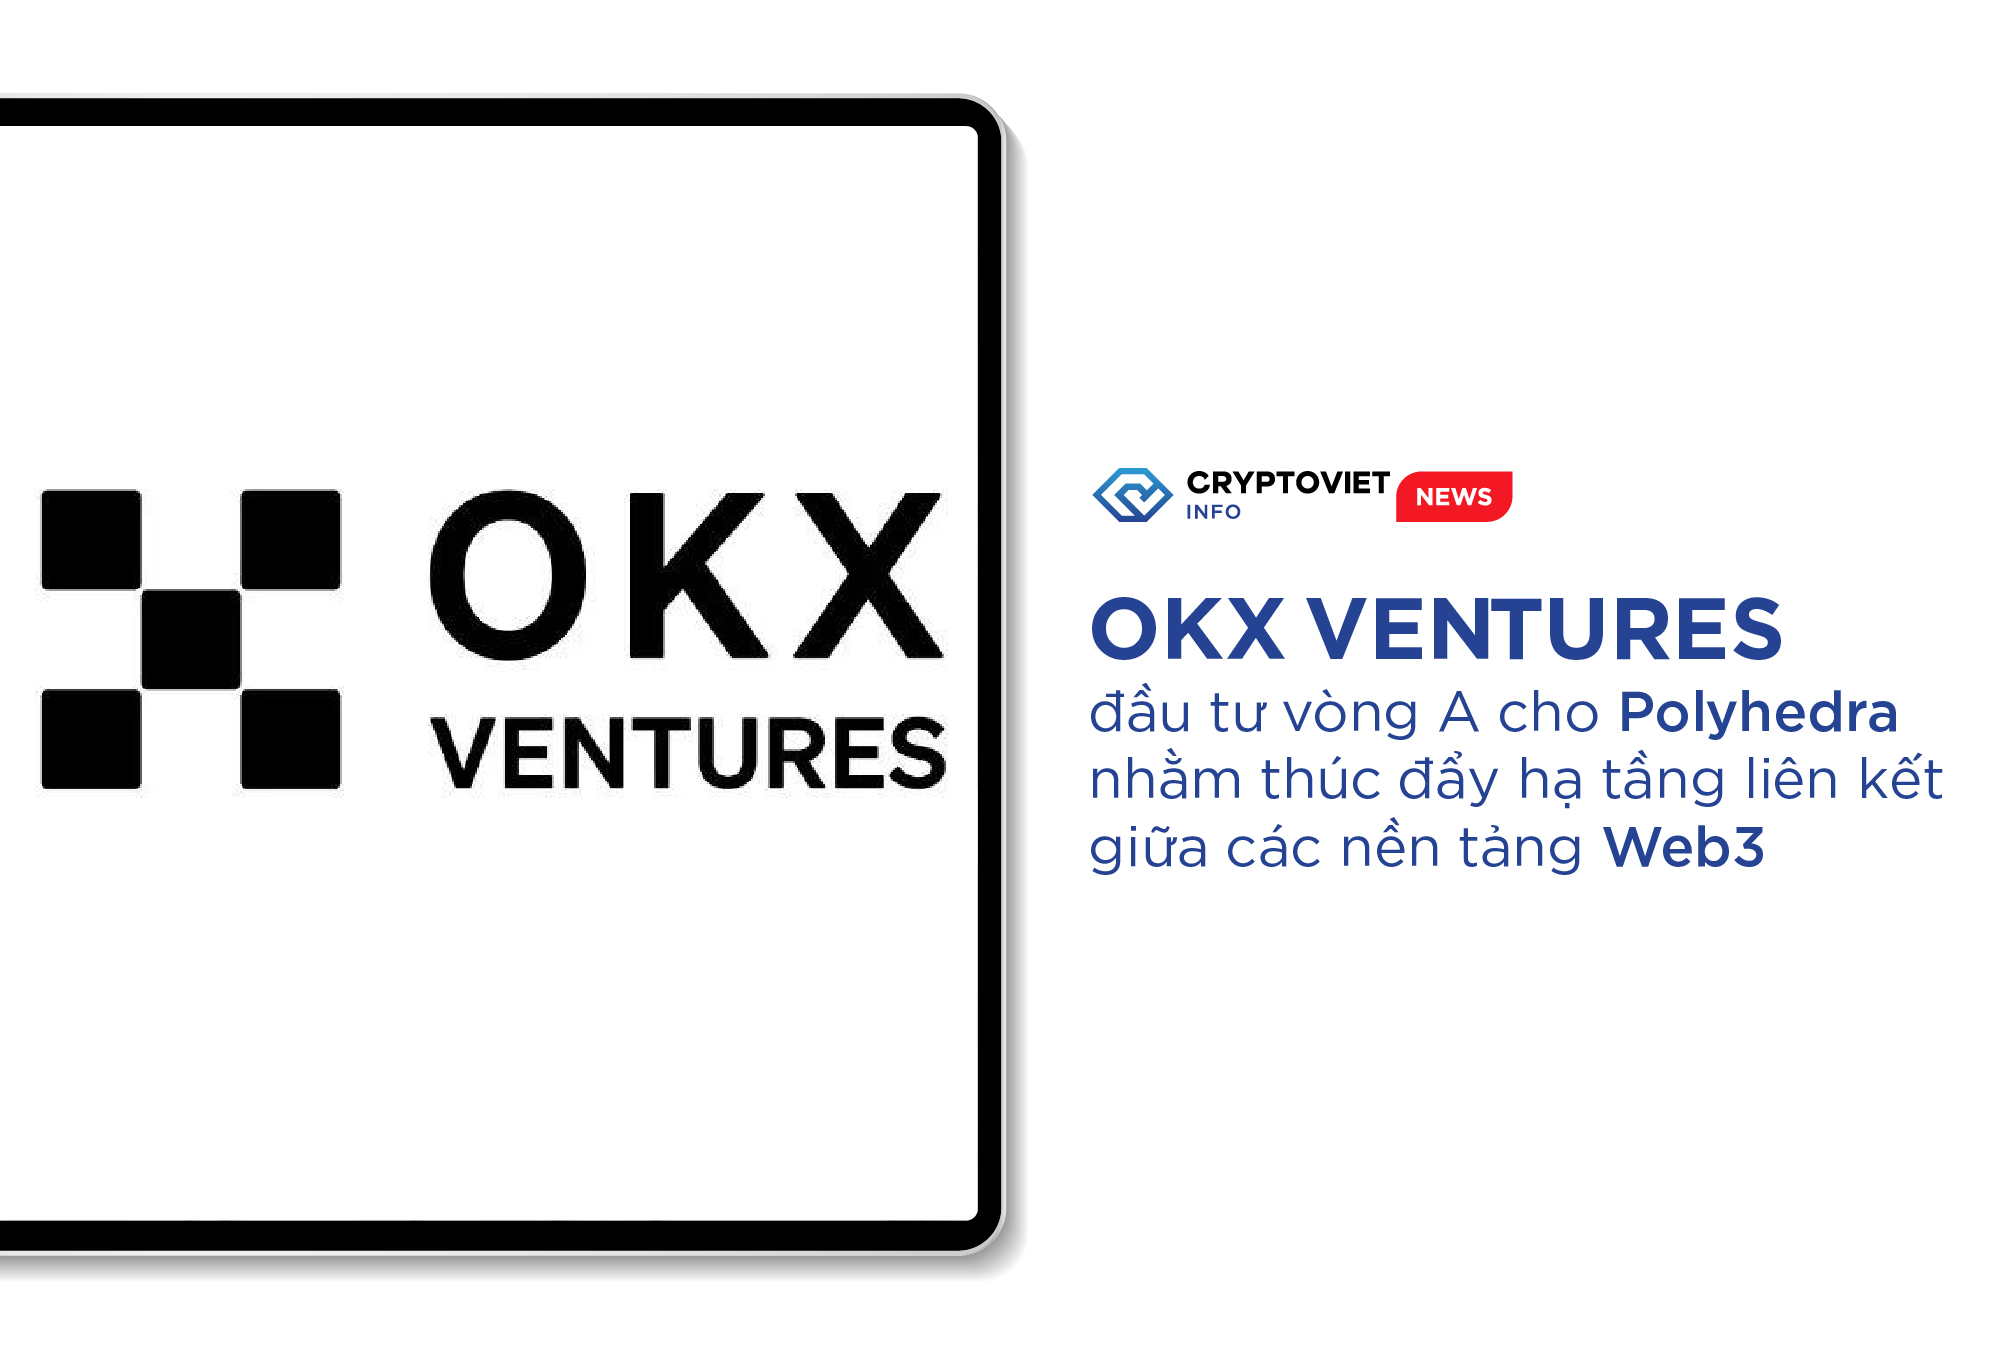 OKX Ventures đầu tư vòng A cho Polyhedra nhằm thúc đẩy hạ tầng liên kết giữa các nền tảng Web3